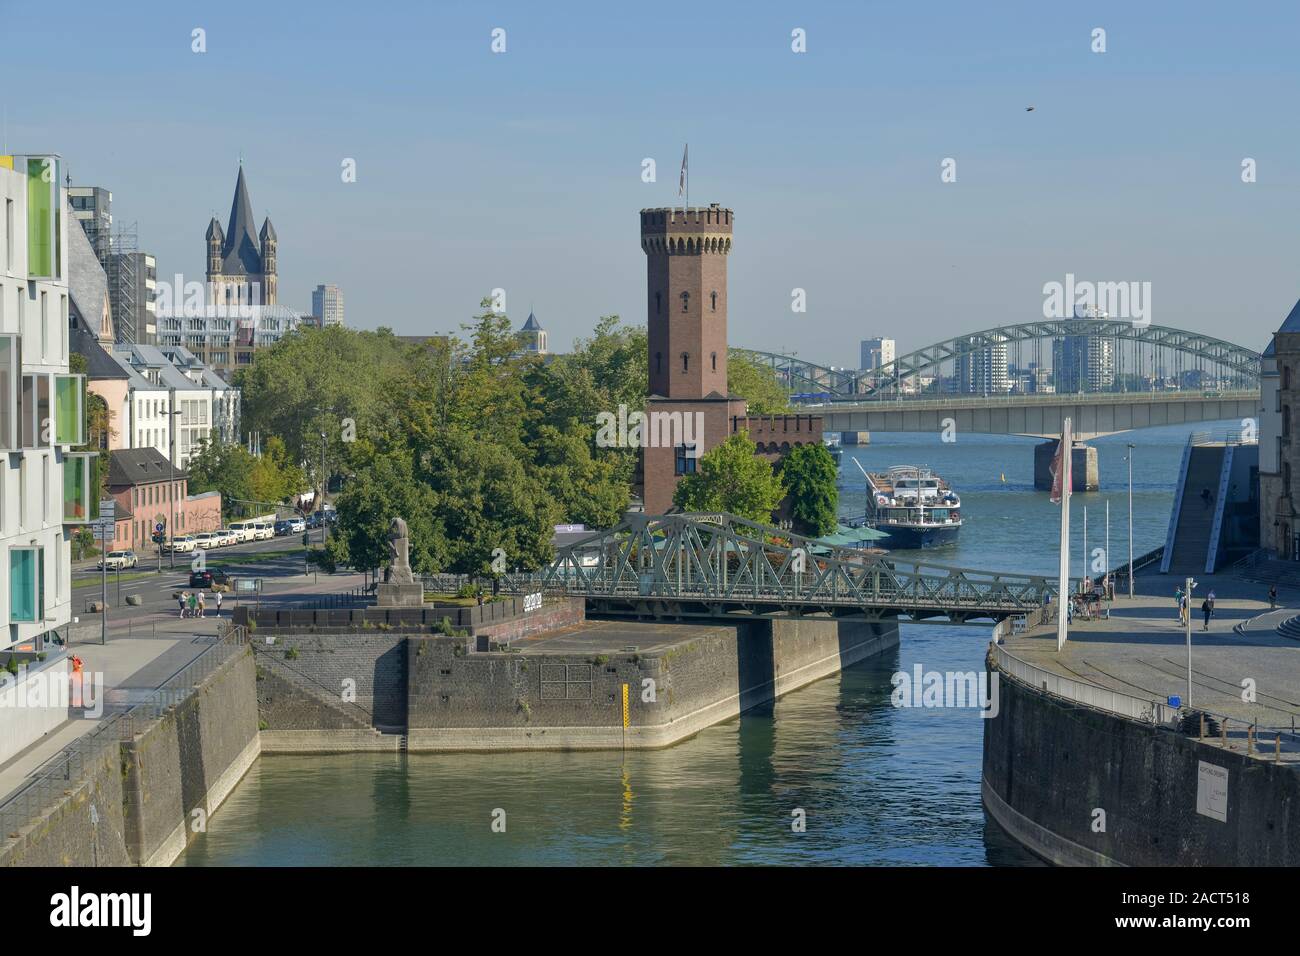 Malakoffturm, Rheinau-Hafen, Köln, Nordrhein-Westfalen, Deutschland Stock Photo